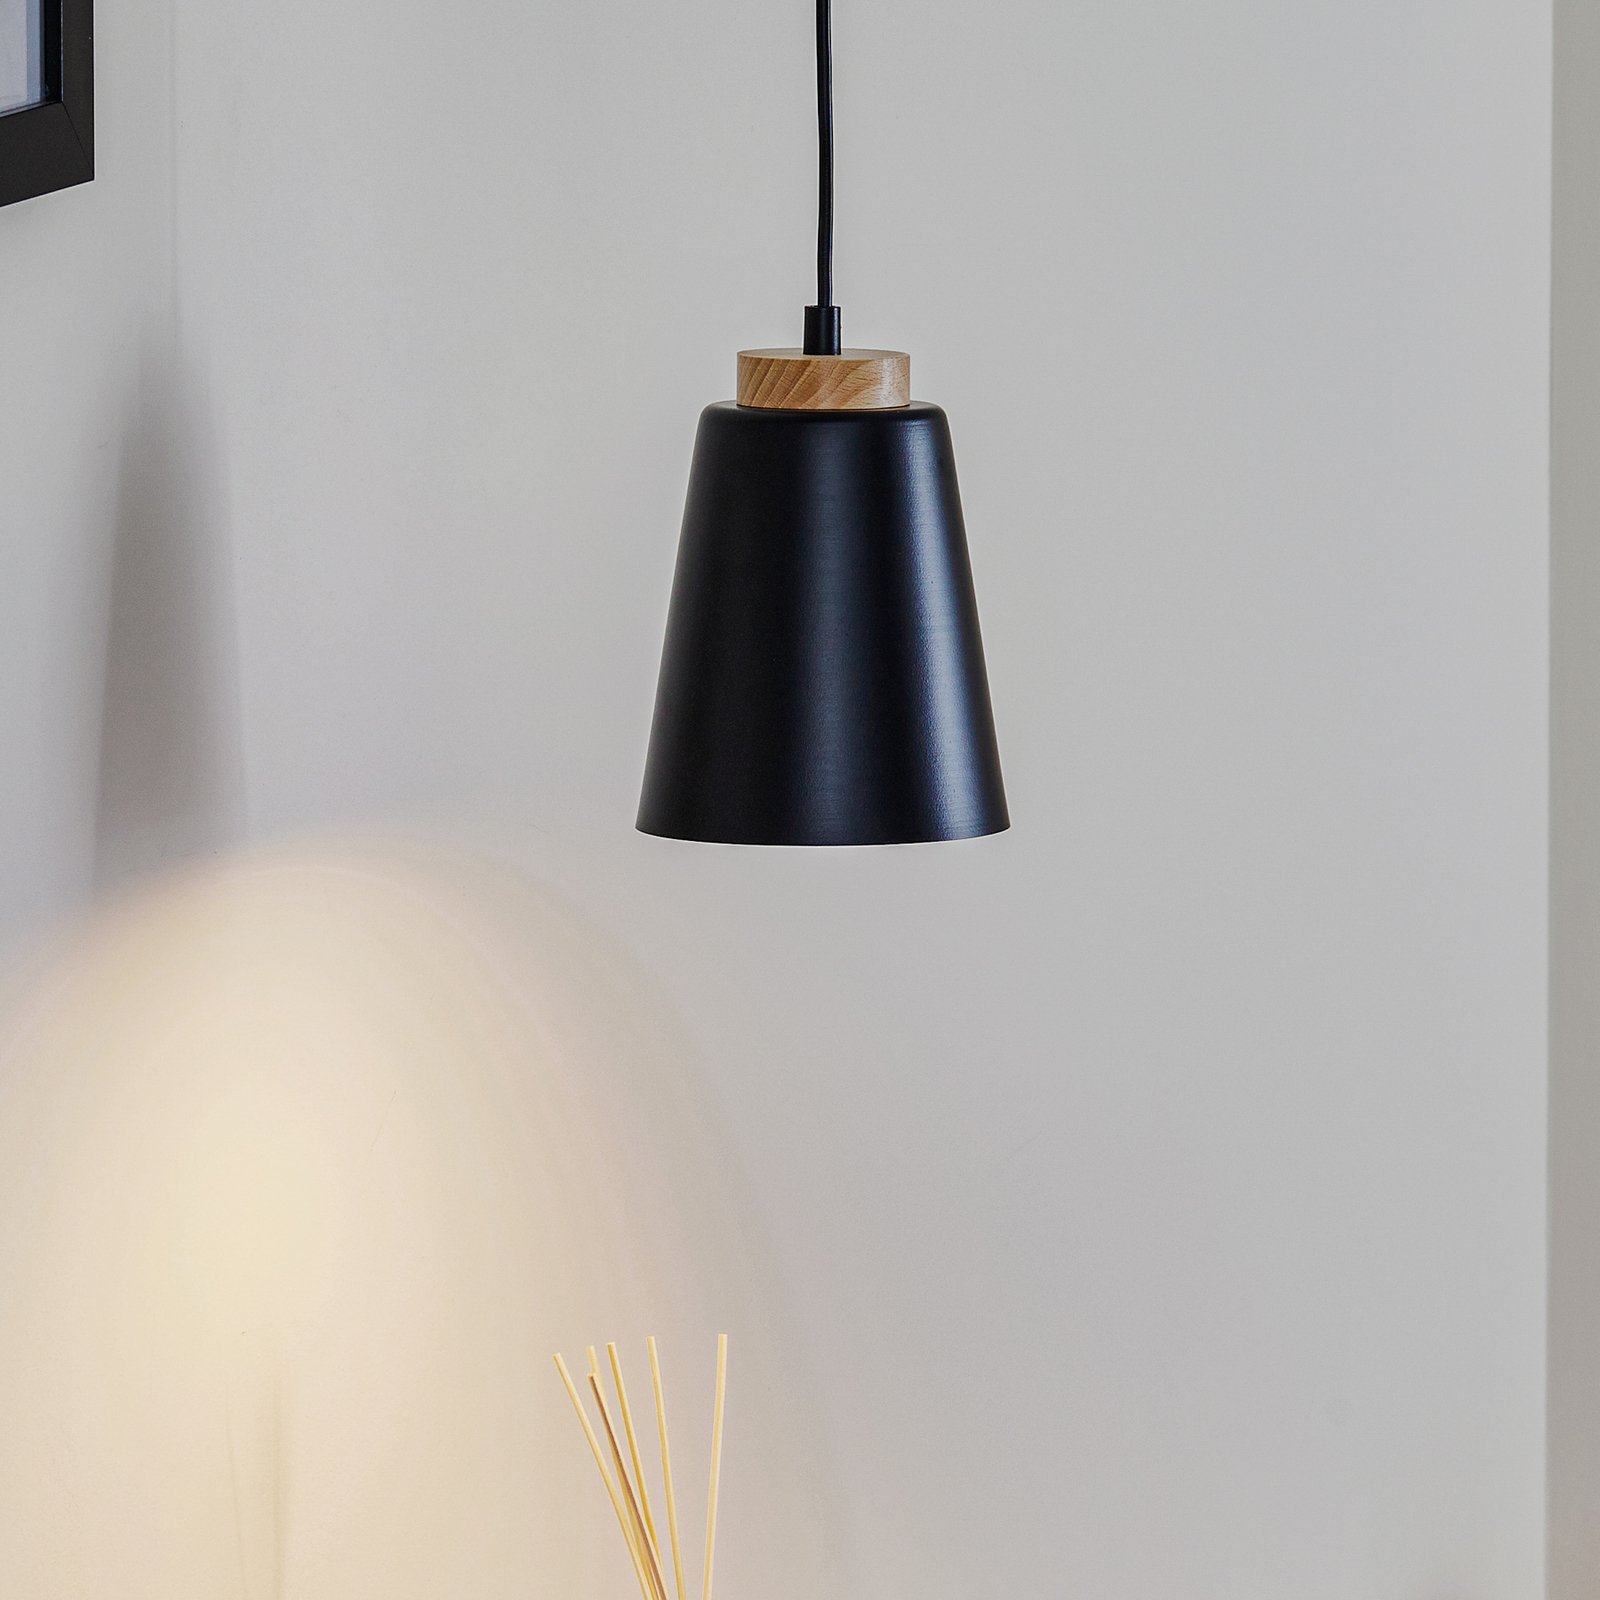 Bolero 1 hanging light, 1-bulb, black